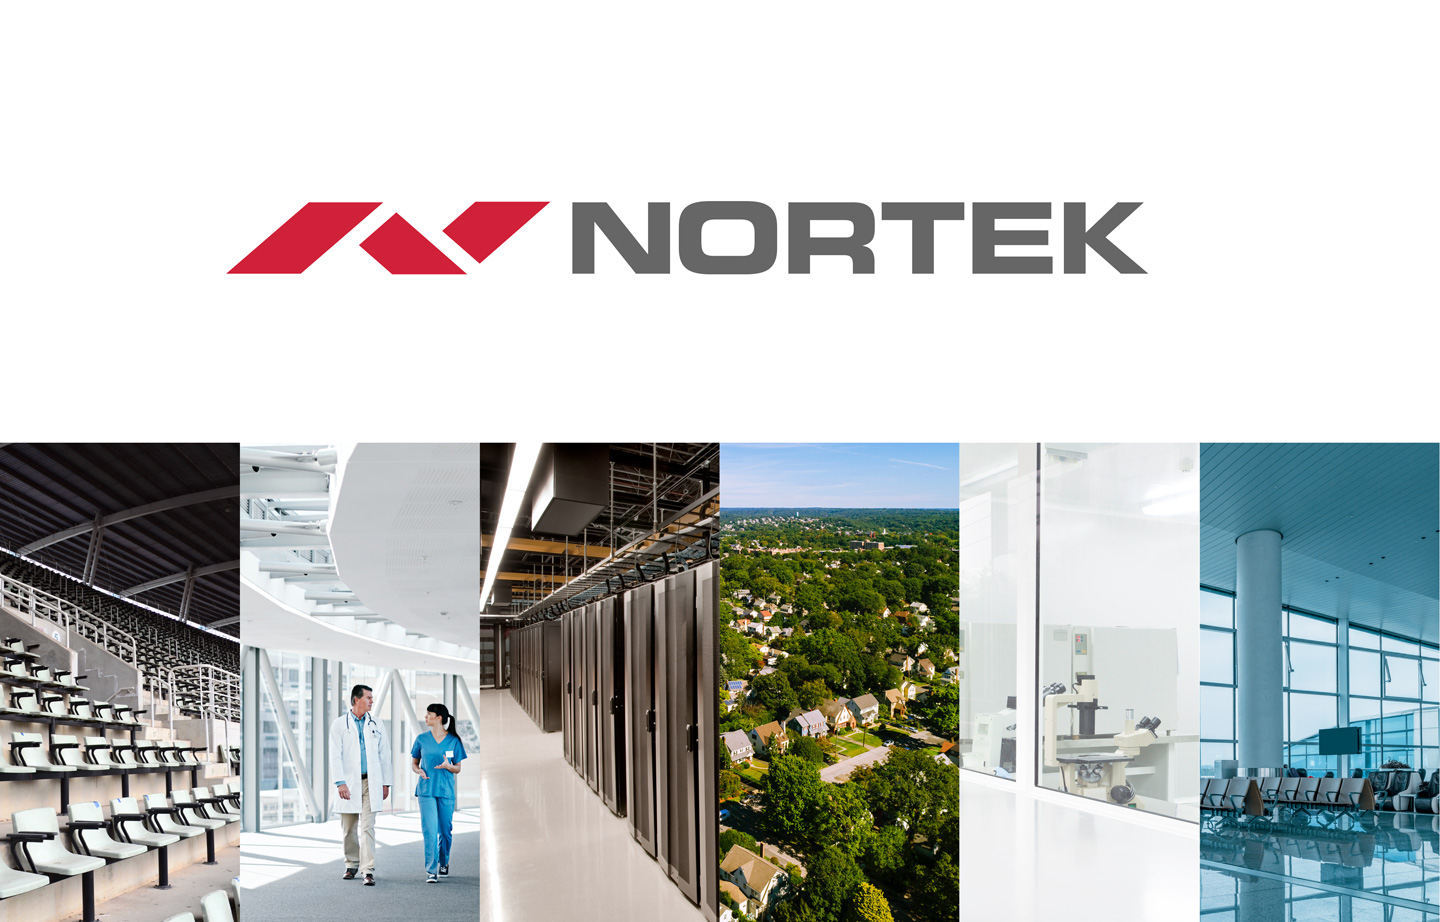 Nortek Data Center Cooling is a subsidiary of Nortek